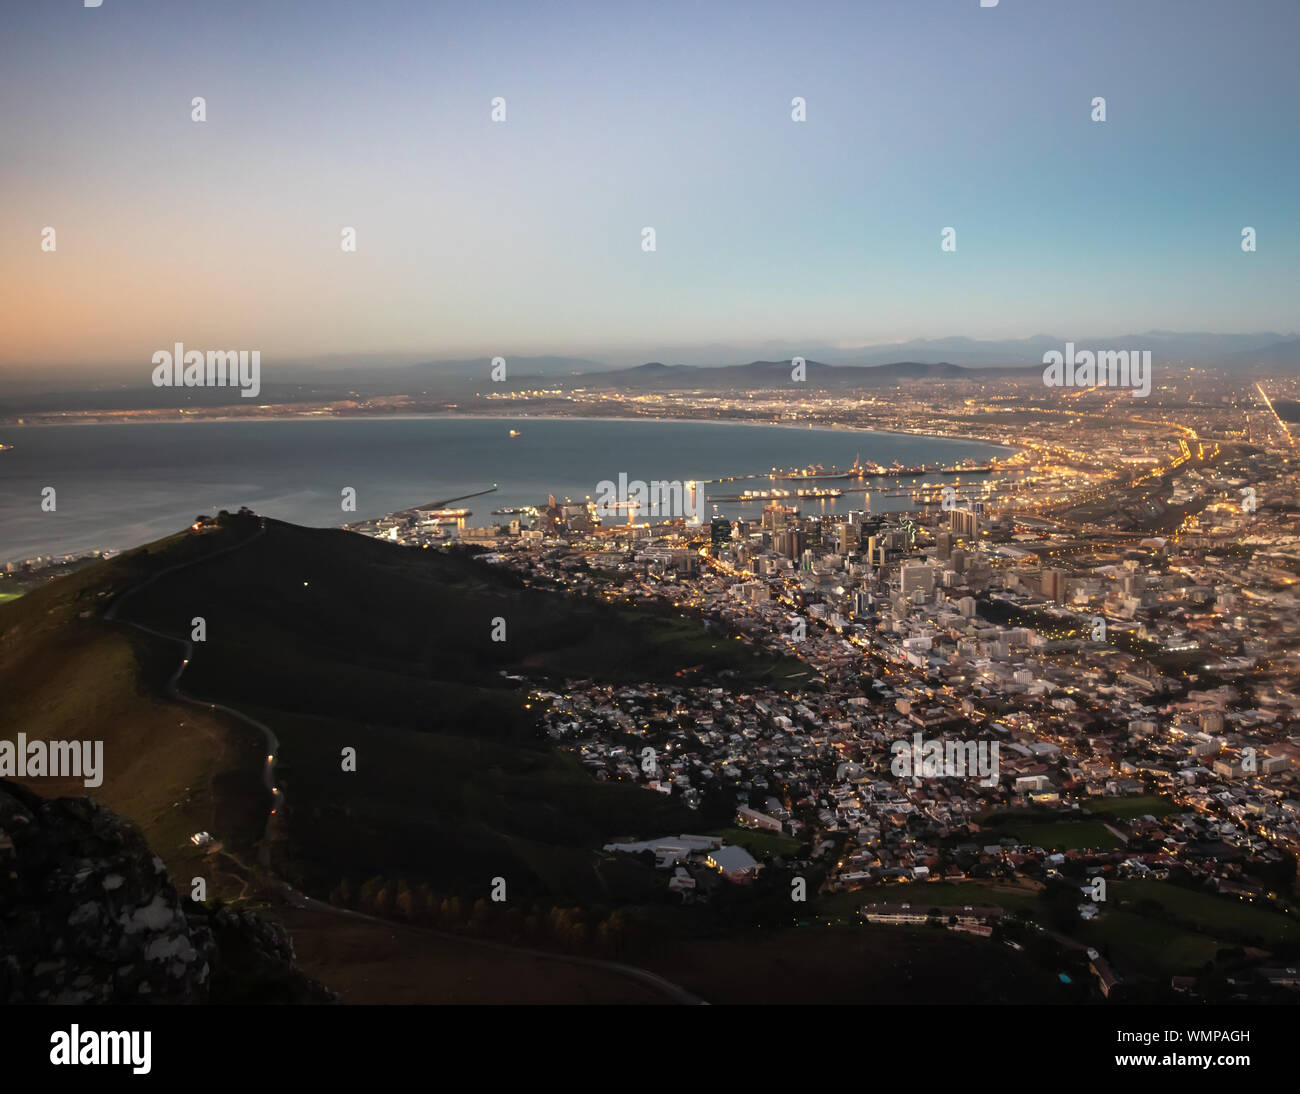 Une vue aérienne de la capitale législative d'Afrique du Sud, la ville pittoresque de Cape Town Banque D'Images